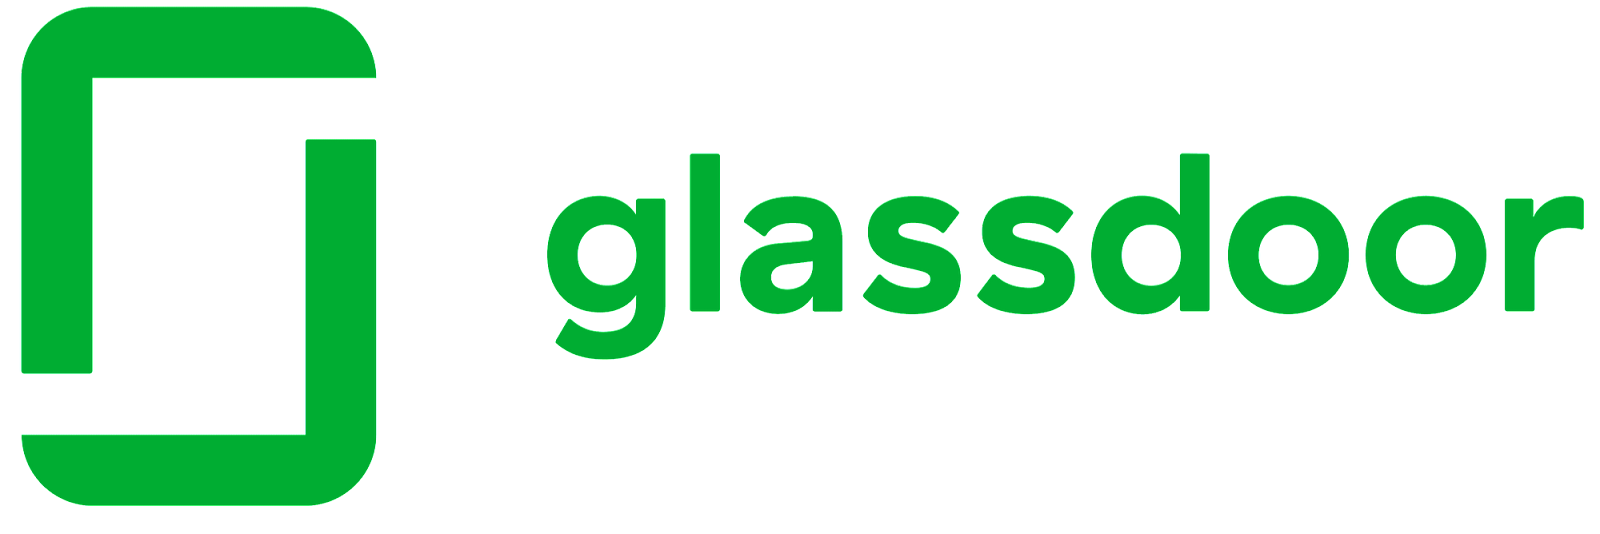 Glassdoor.com is top job search site in India